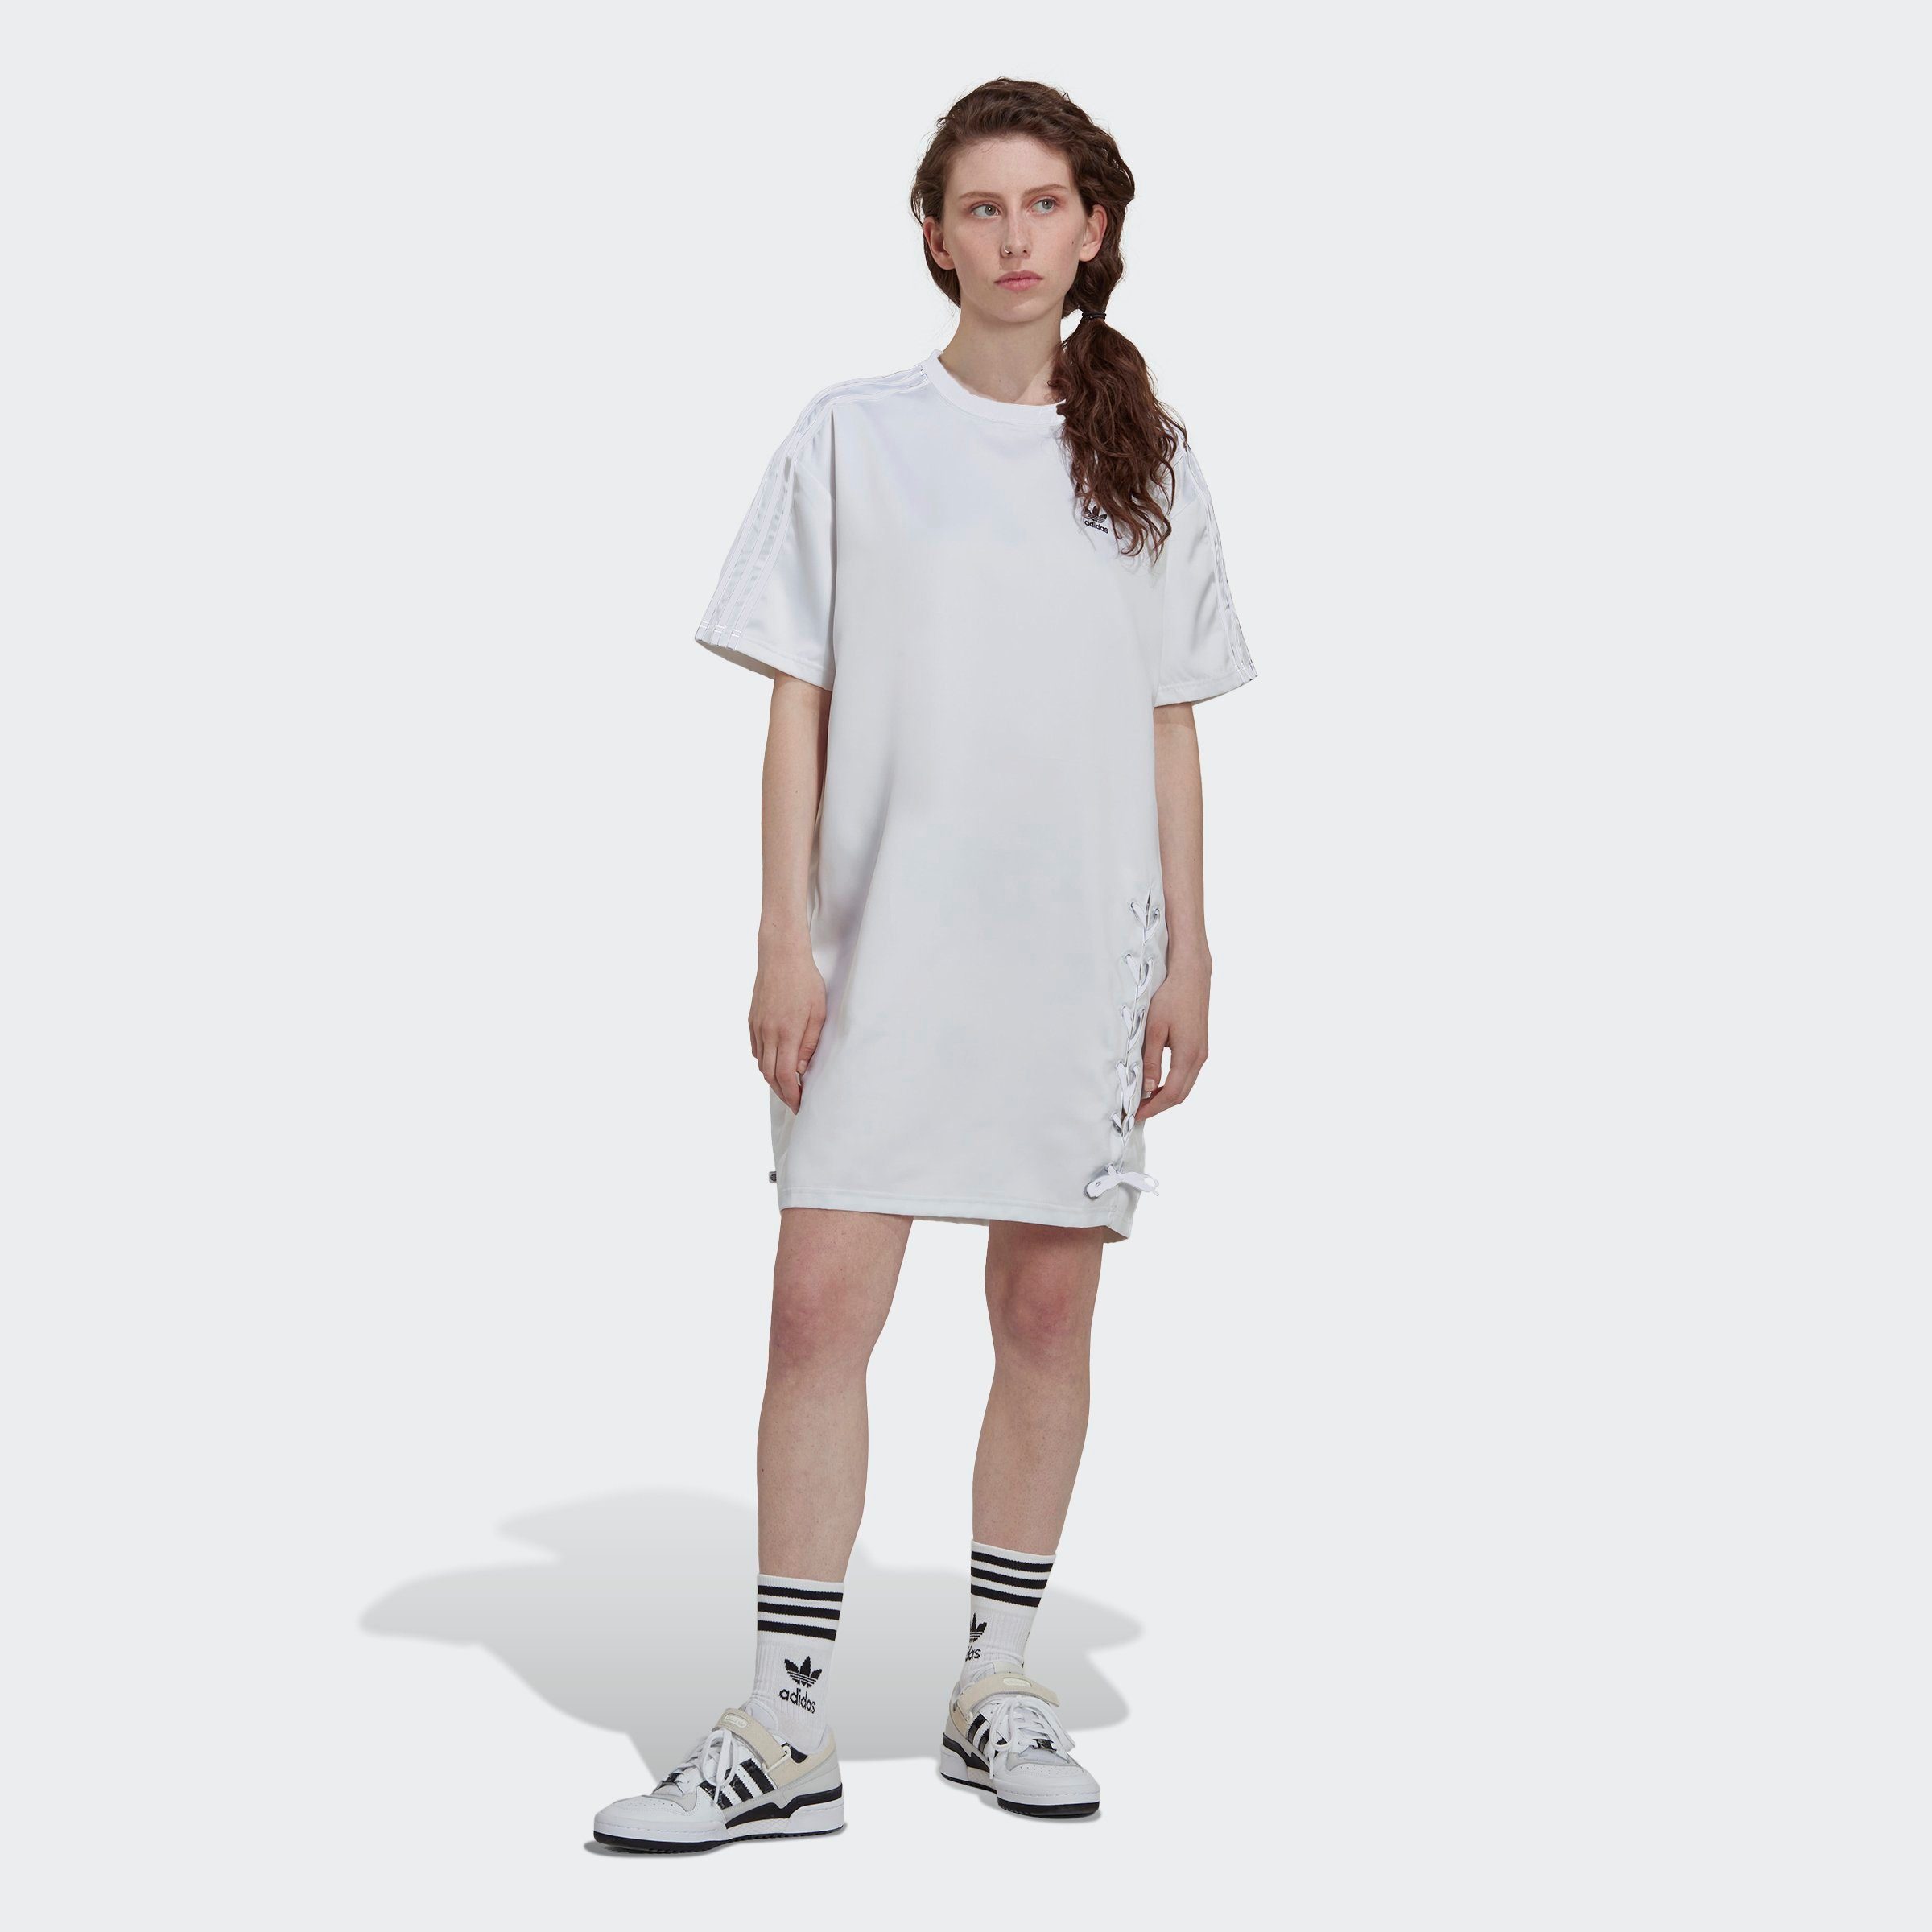 ORIGINAL LACED Originals Sommerkleid ALWAYS adidas WHITE -KLEID